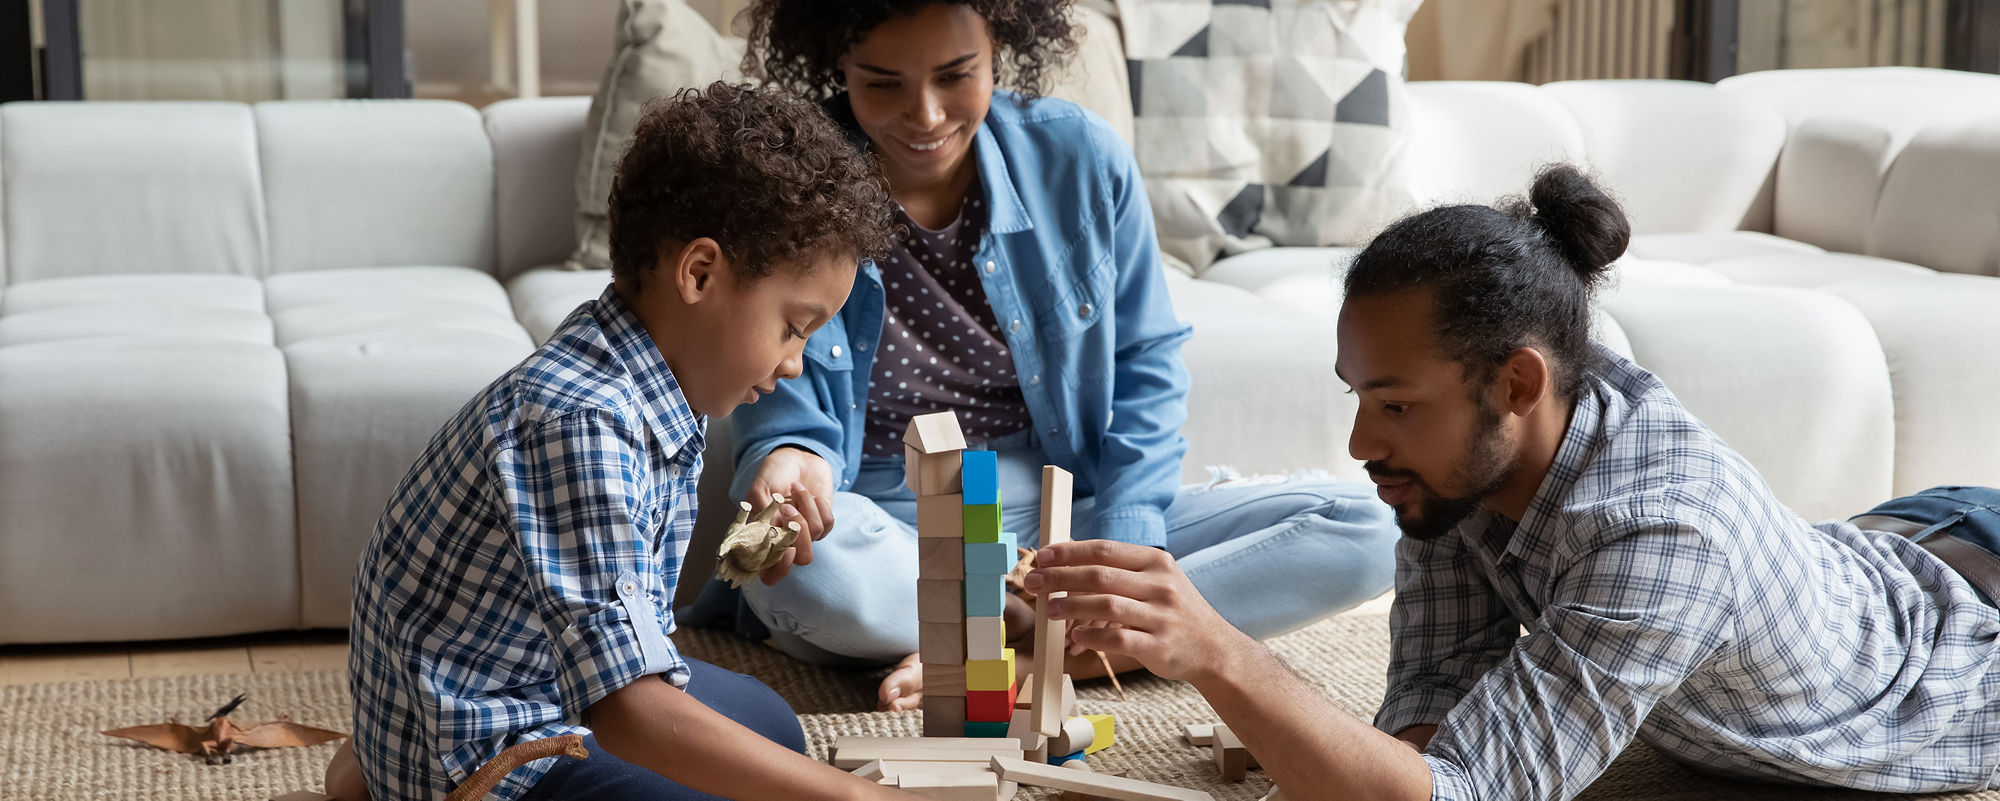 Padres afroamericanos amorosos jugando con juguetes de madera en su sala de estar con su hijo pequeño.